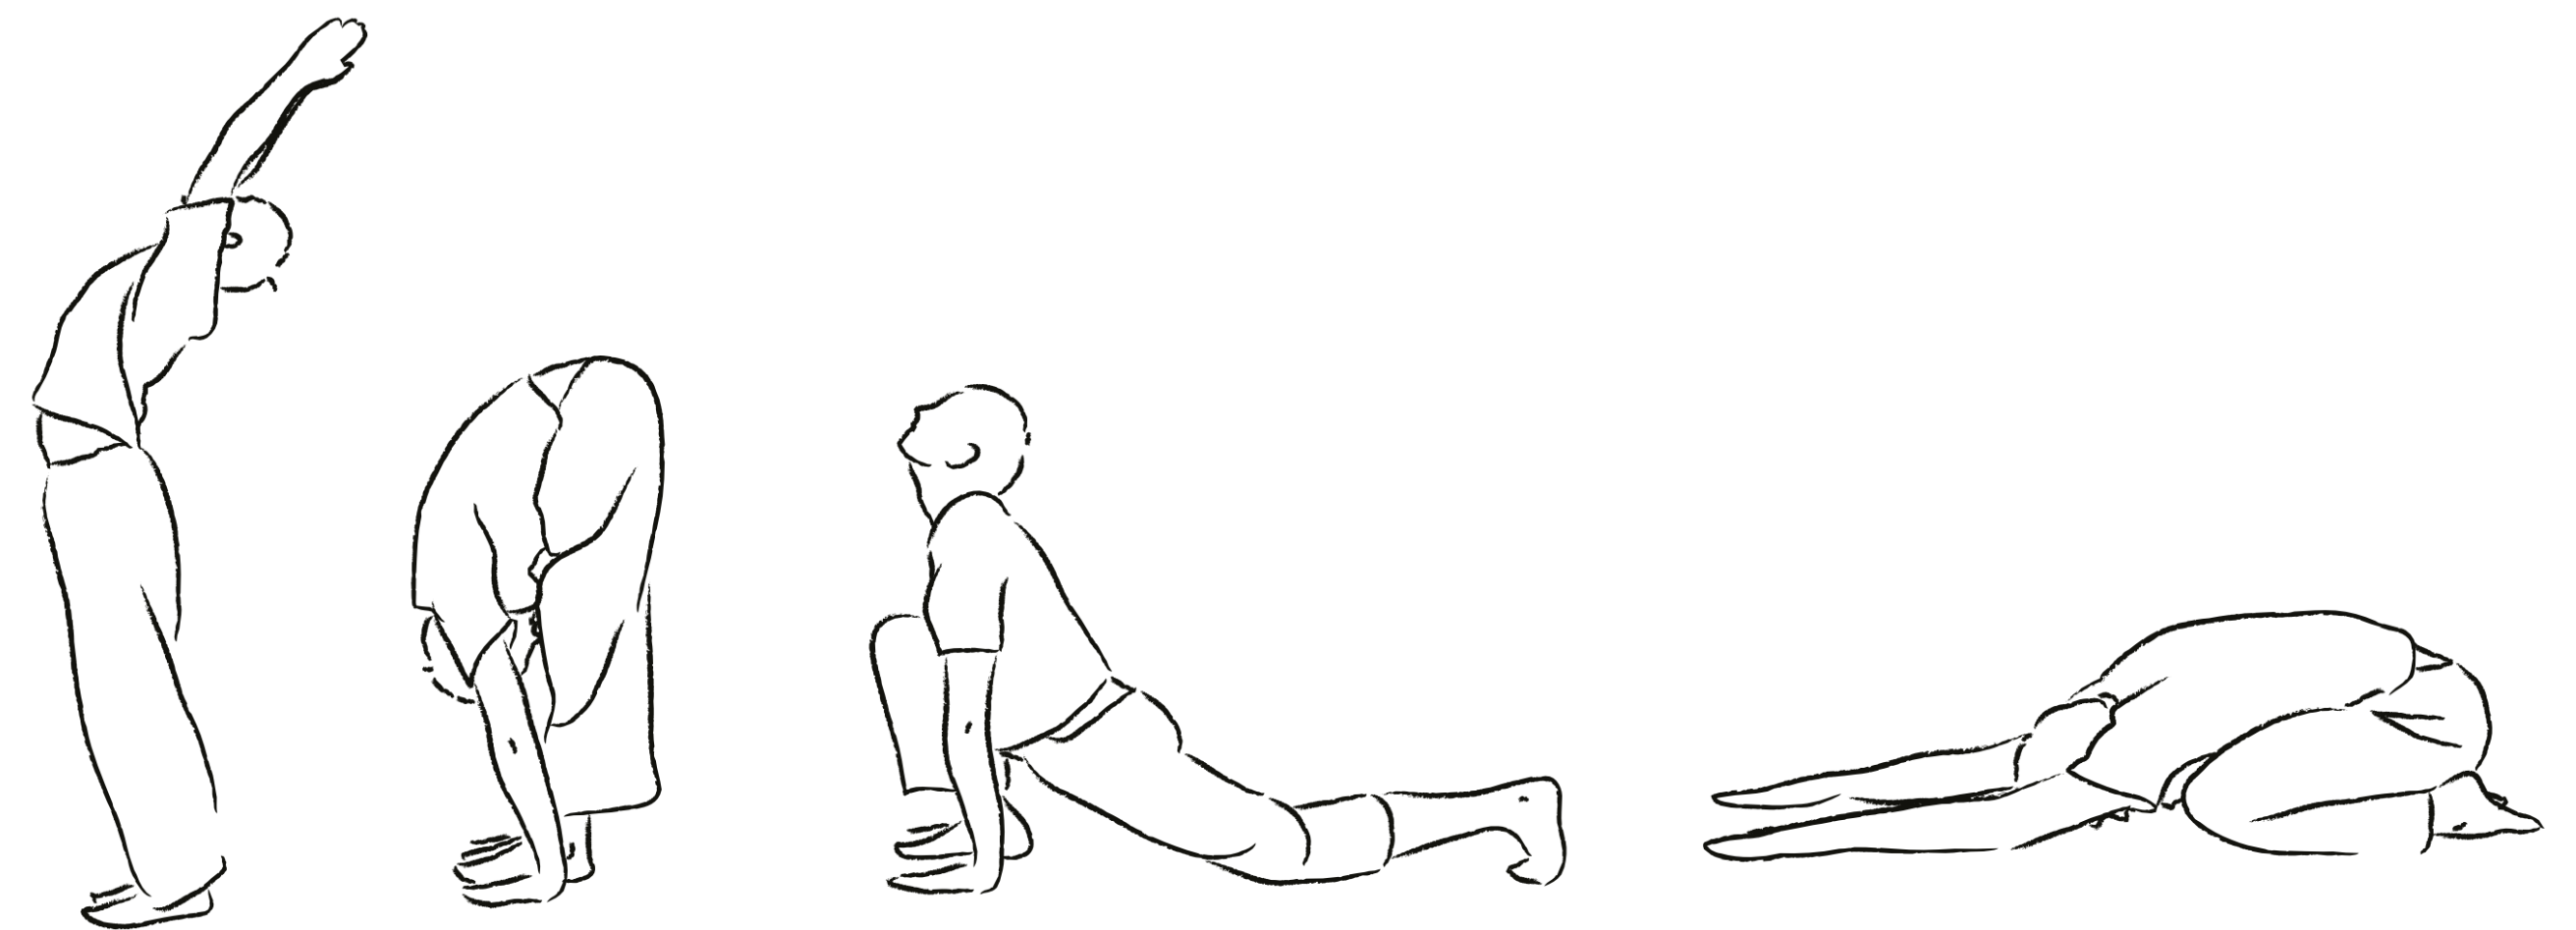 Crtež ljudi koji vježbaju jogu